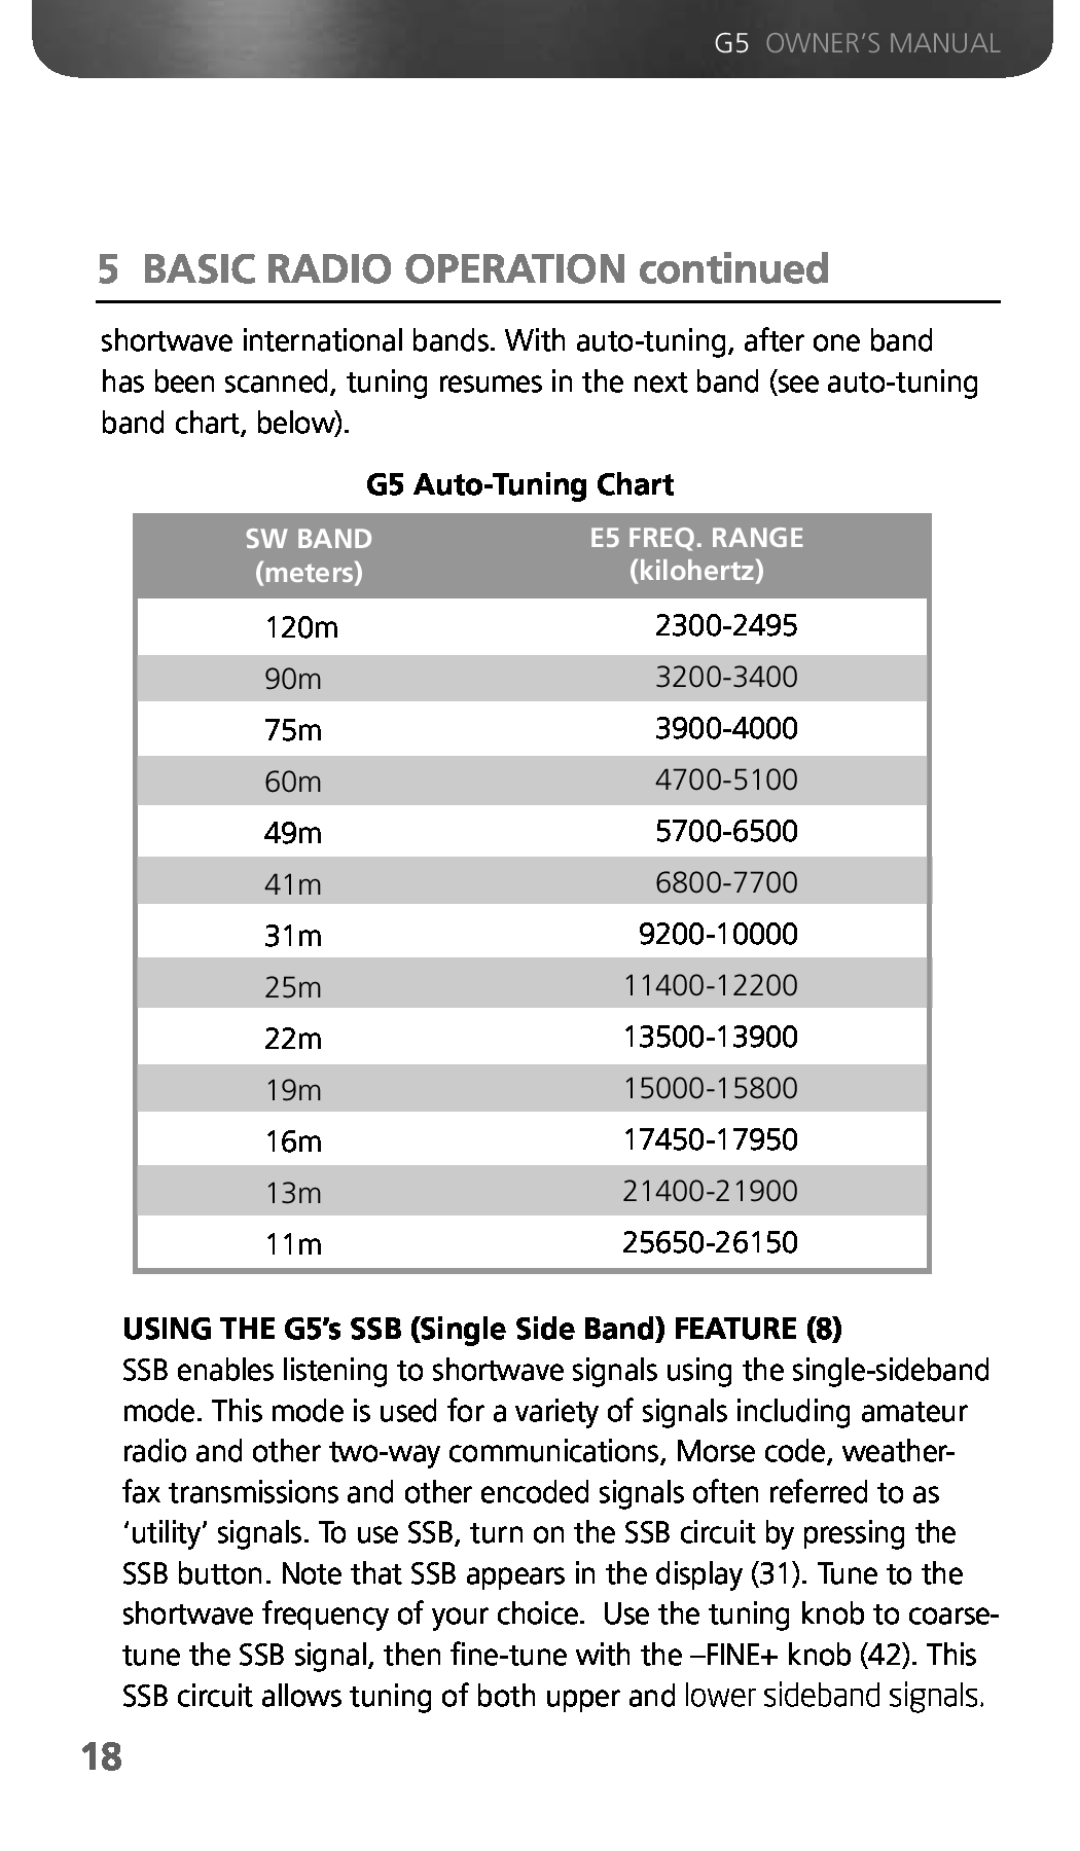 Eton owner manual BASIC RADIO OPERATION continued, G5 Auto-Tuning Chart, Sw Band, E5 FREQ. RANGE, meters, kilohertz 